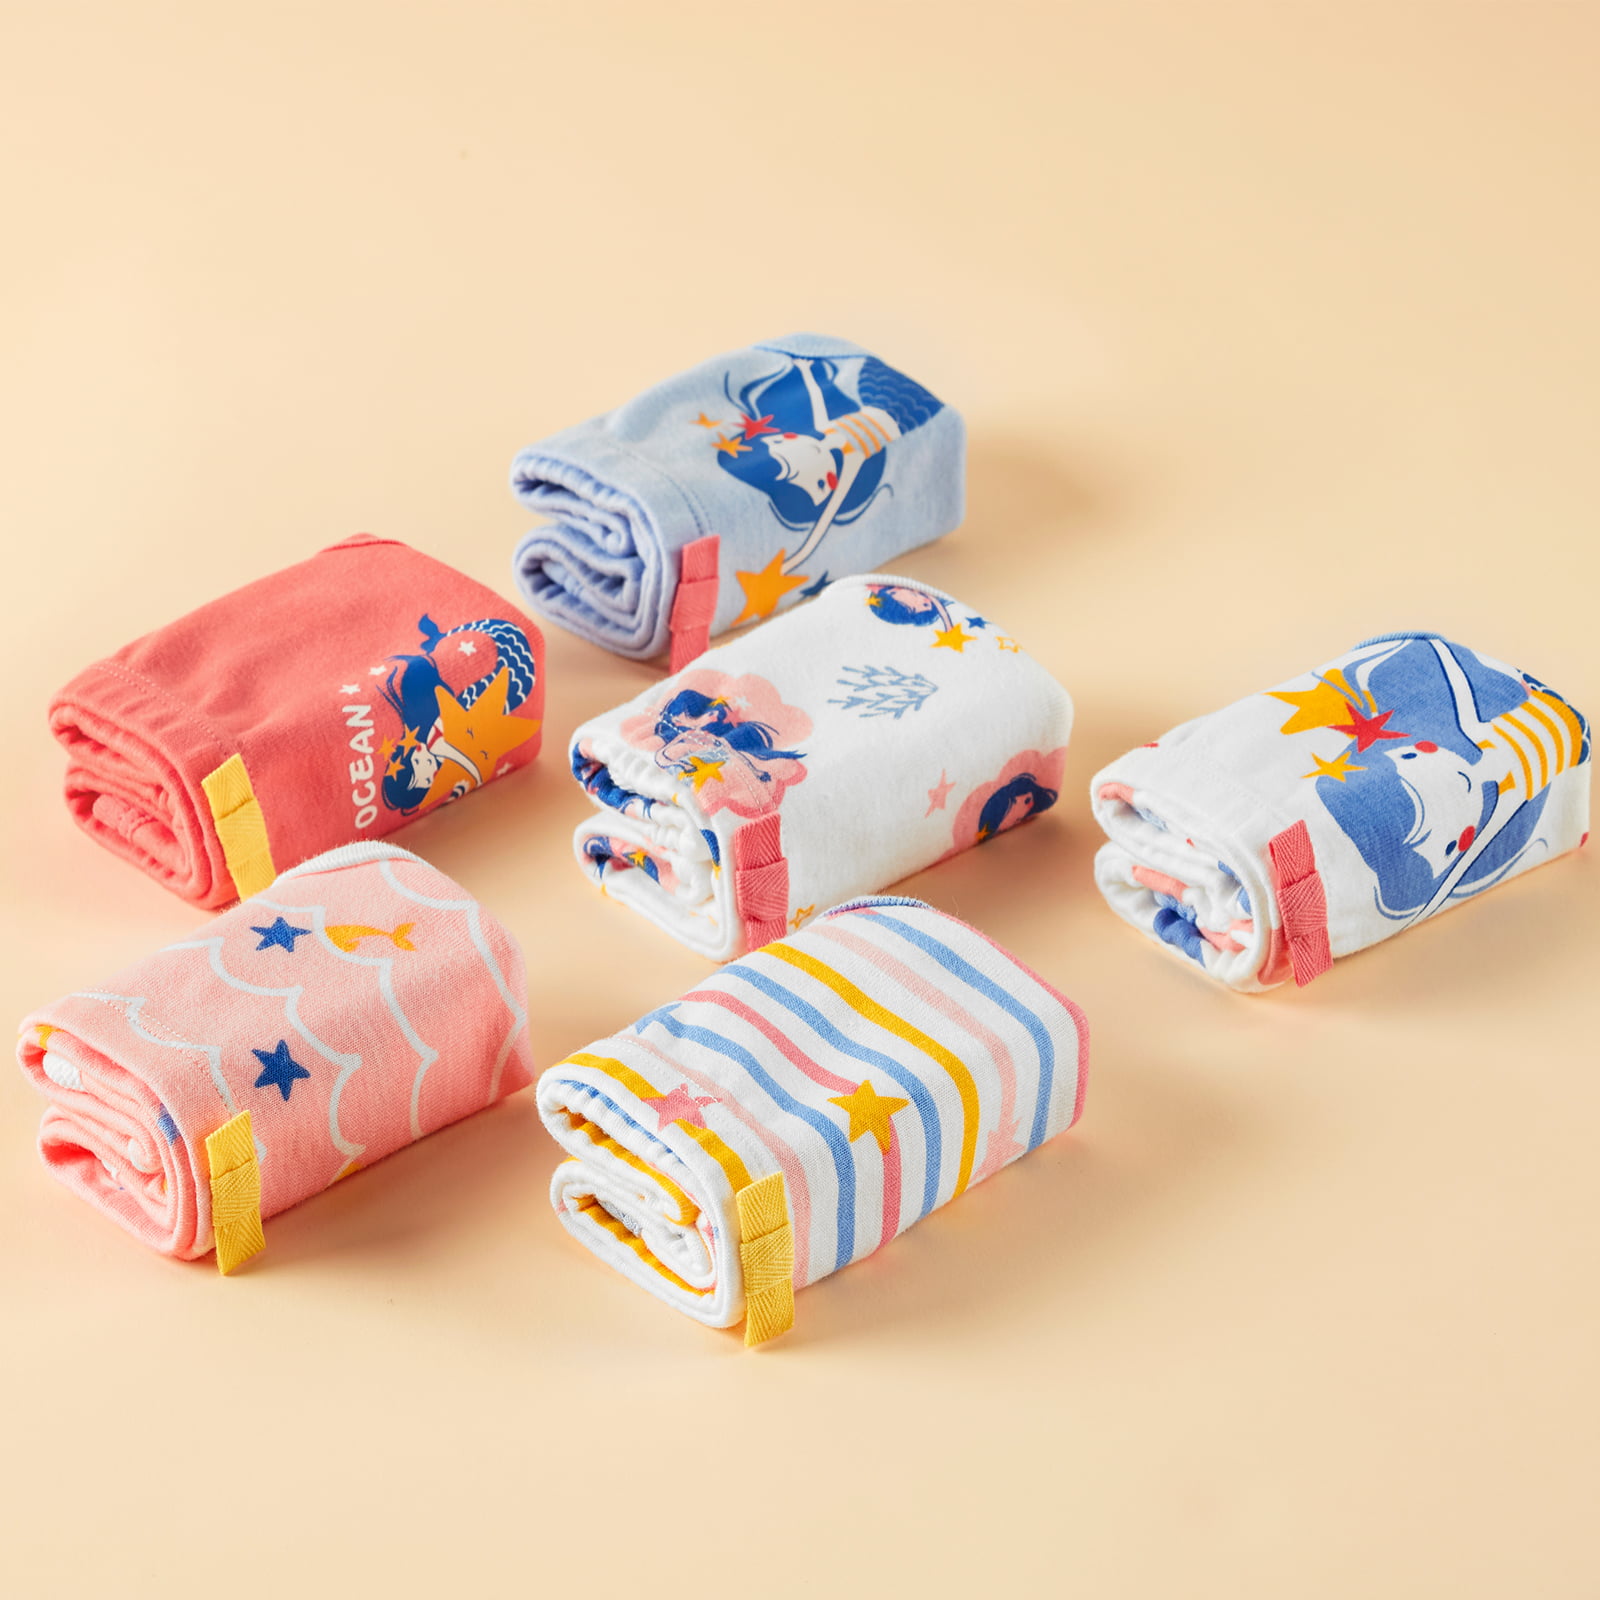 6 Packs Kids Girls Colorful Panties Briefs Cute Horse Printed